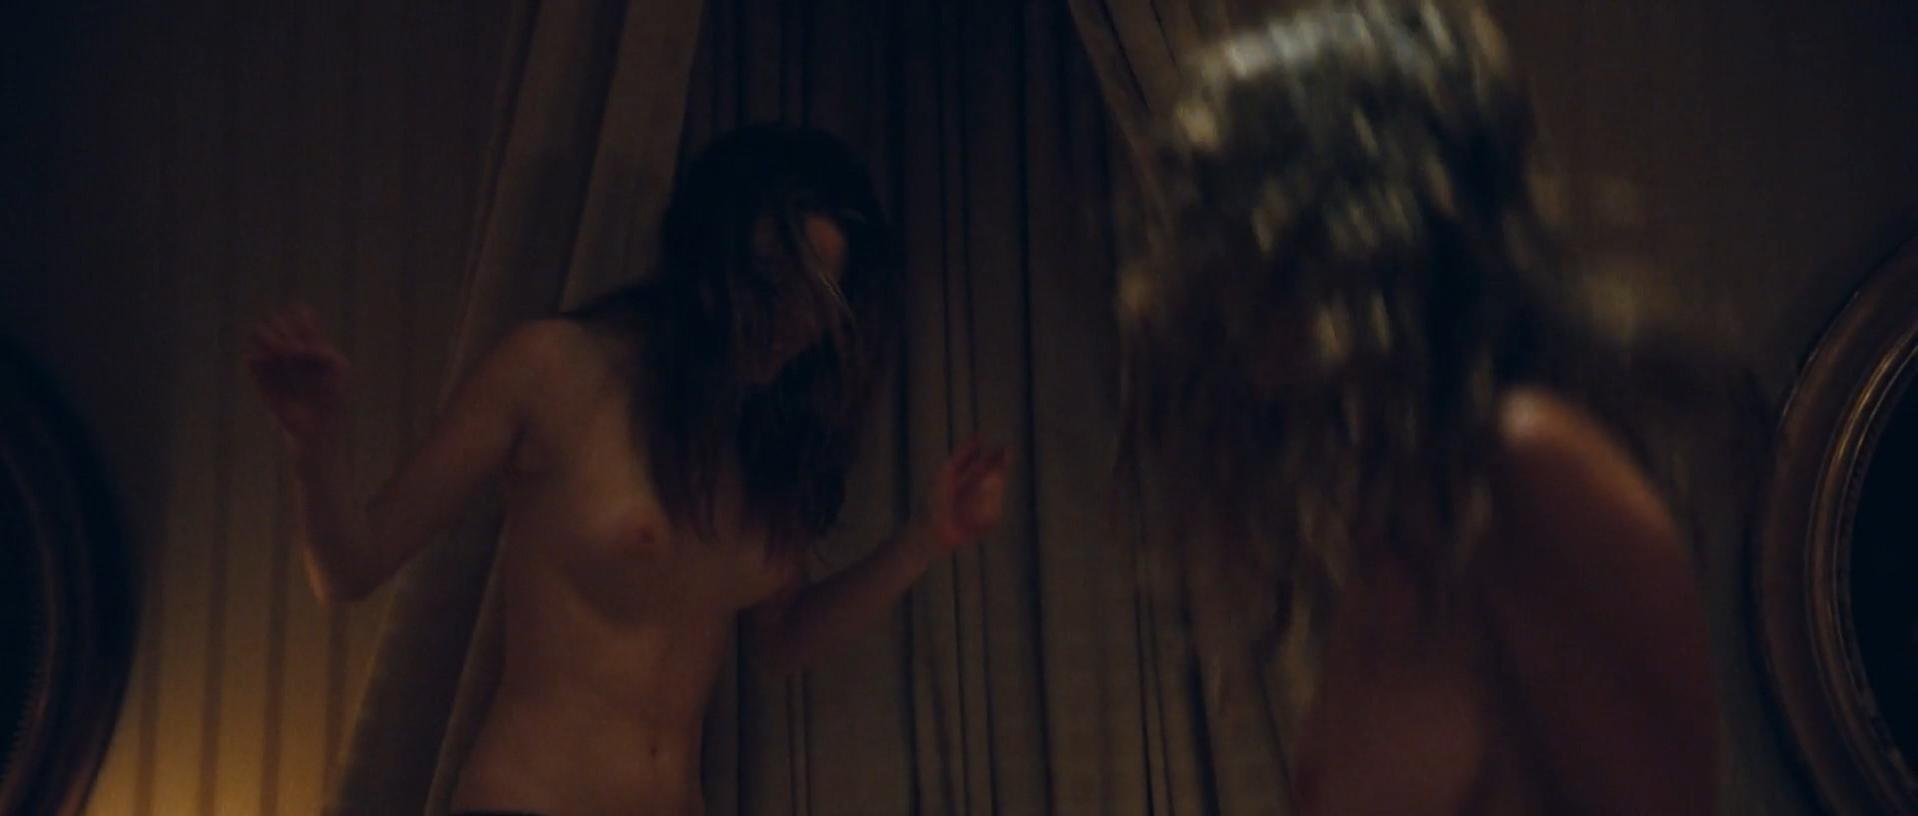 Nude Video Celebs Camille Rowe Nude Josephine De La Baume Nude Alexandra Dahlstrom Nude